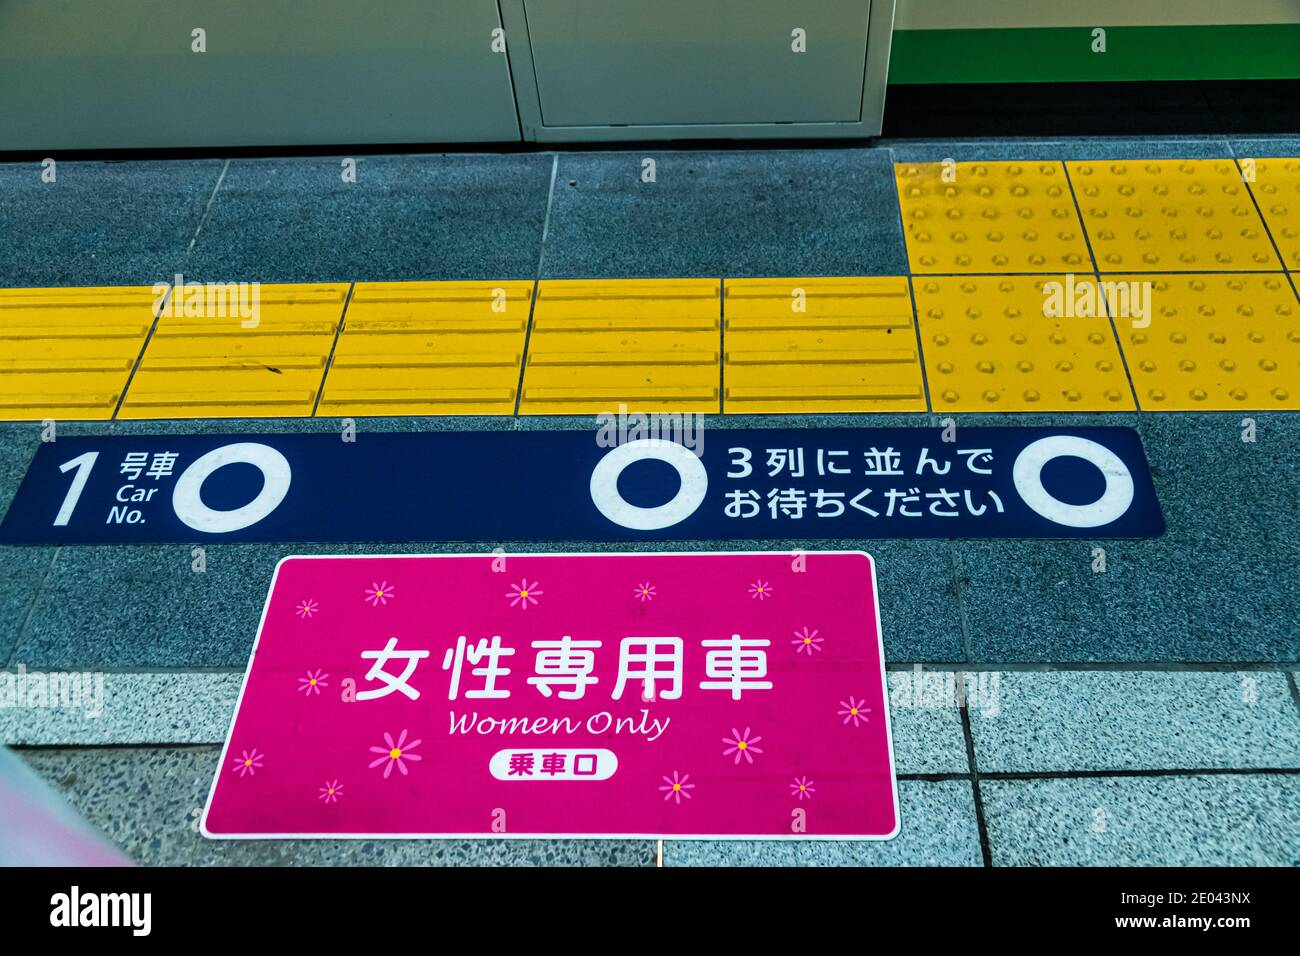 Plate-forme-conseil pour indiquer les entraîneures à Tokyo Underground, Japon. Sur la plate-forme, il y a des compartiments pour les femmes uniquement. Les marques de couleur rose sur la plate-forme l'indiquent Banque D'Images